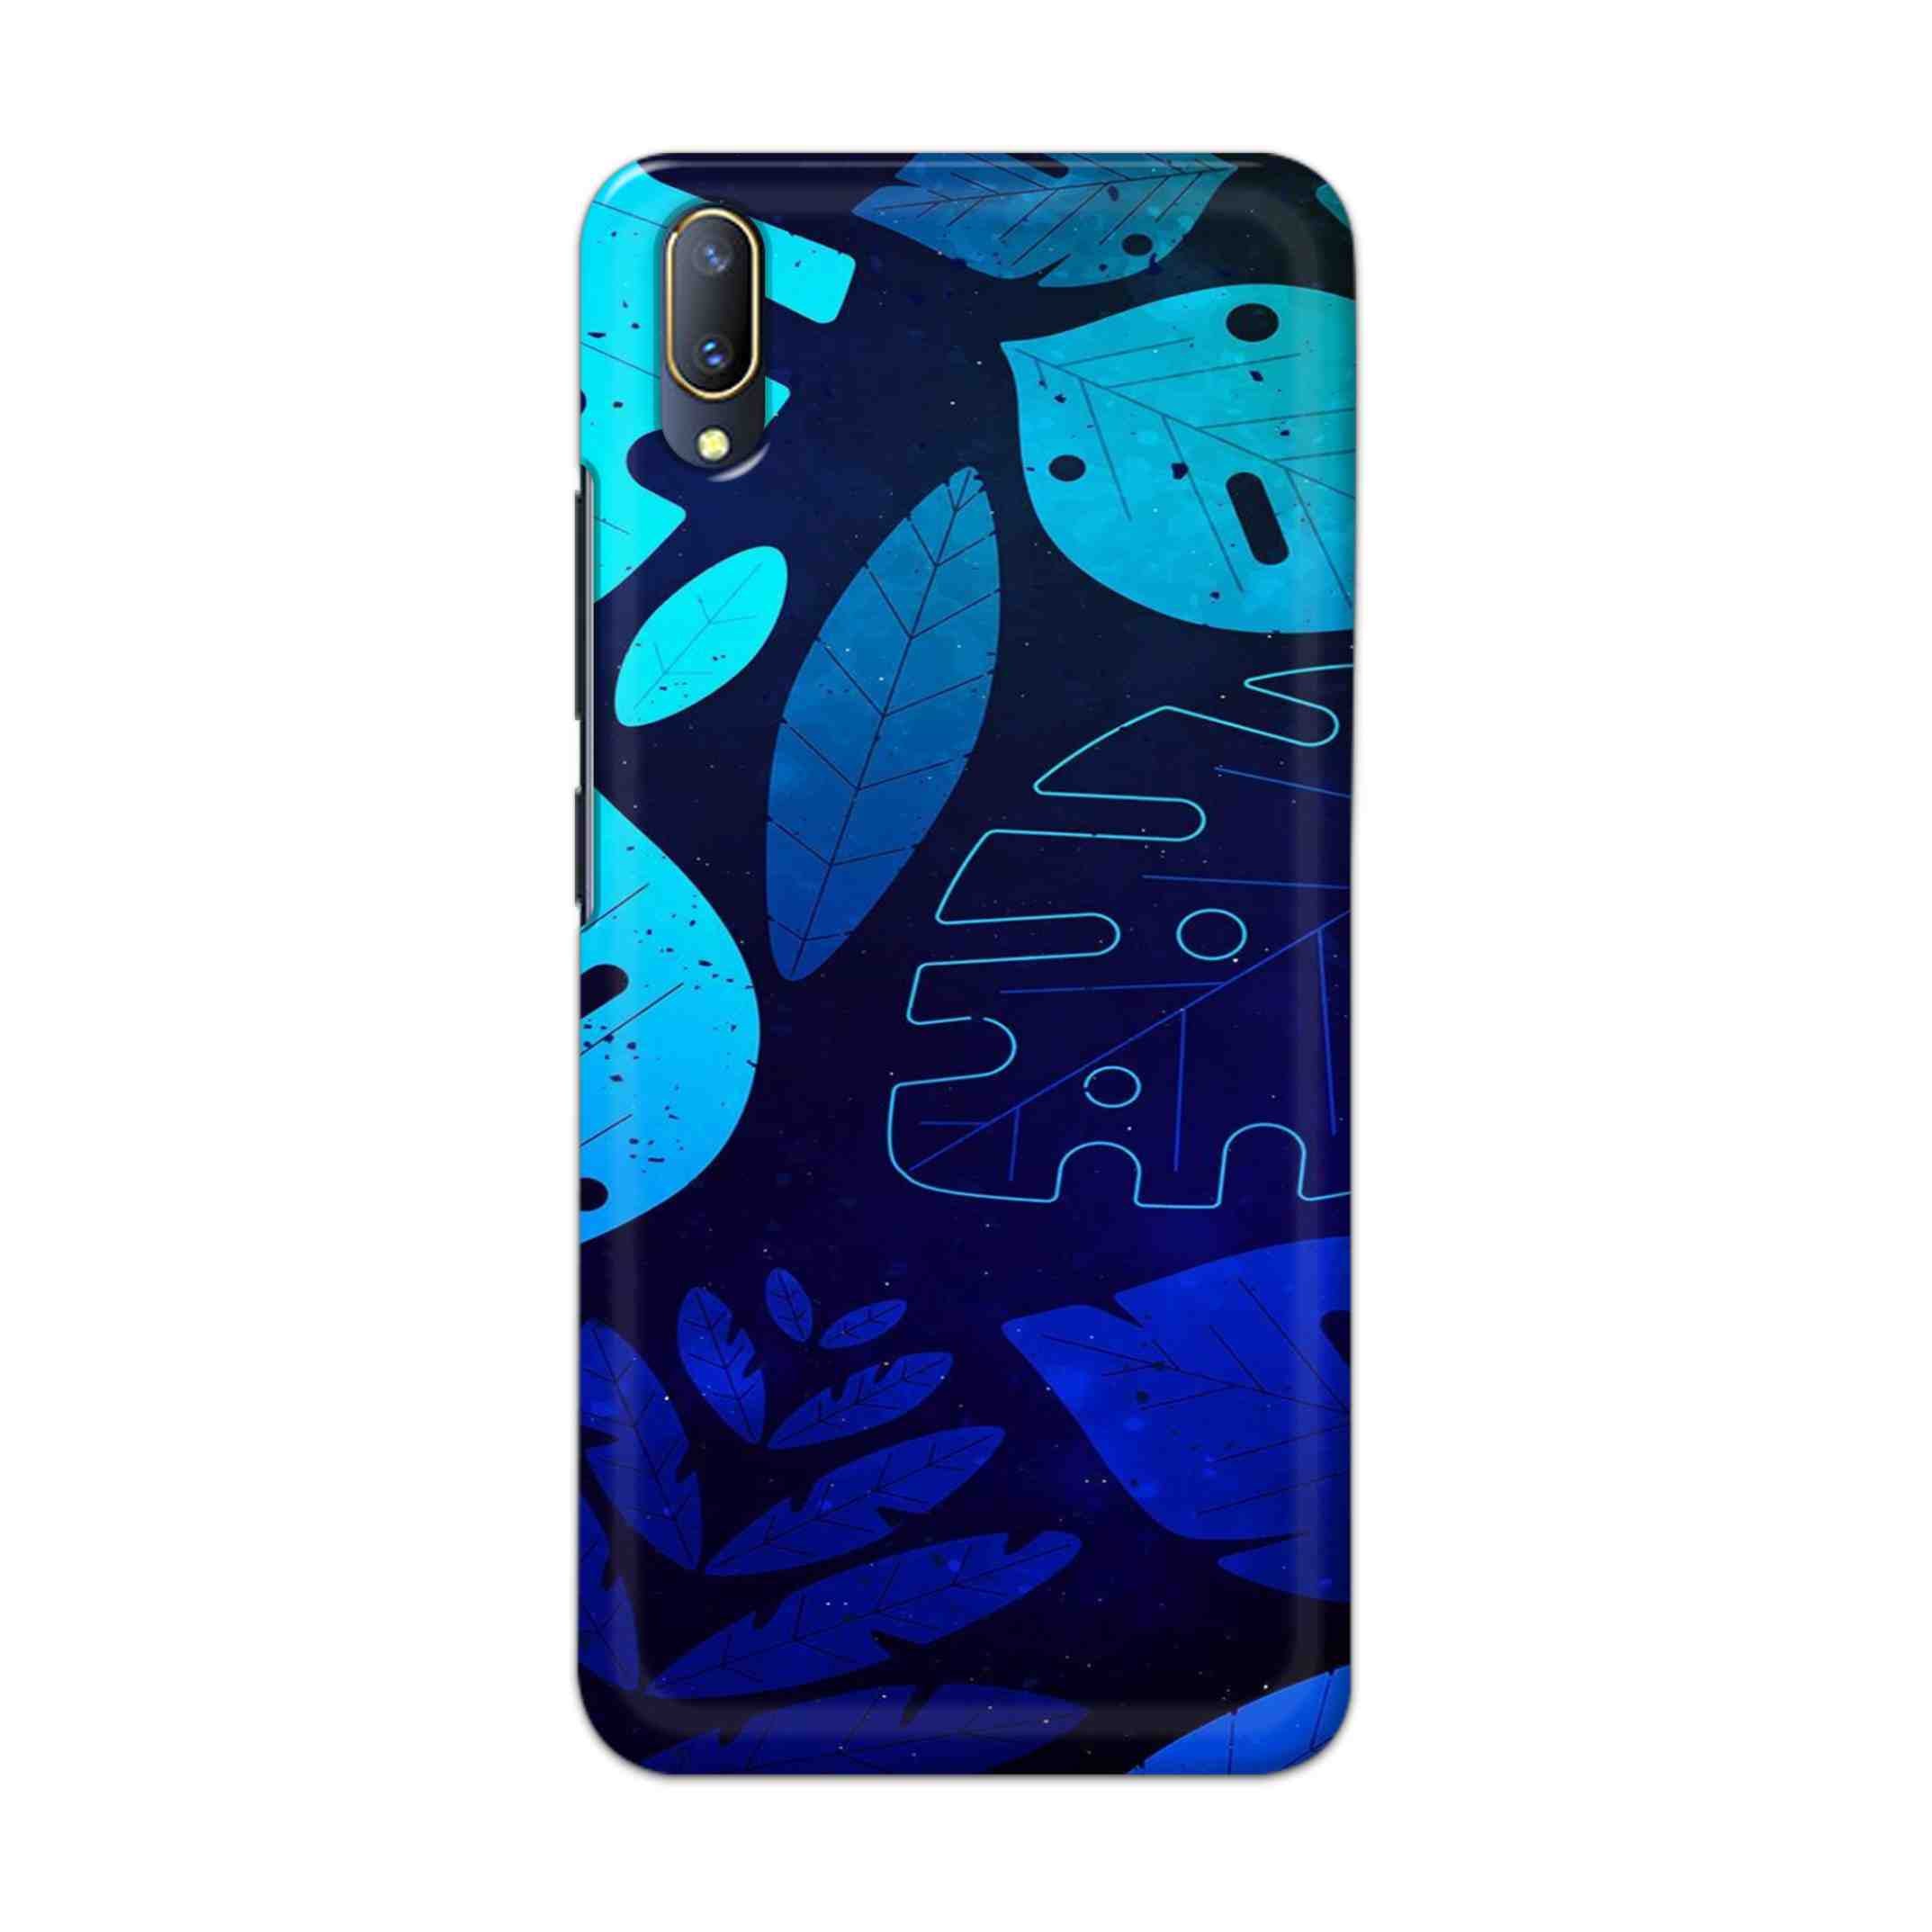 Buy Neon Leaf Hard Back Mobile Phone Case Cover For V11 PRO Online